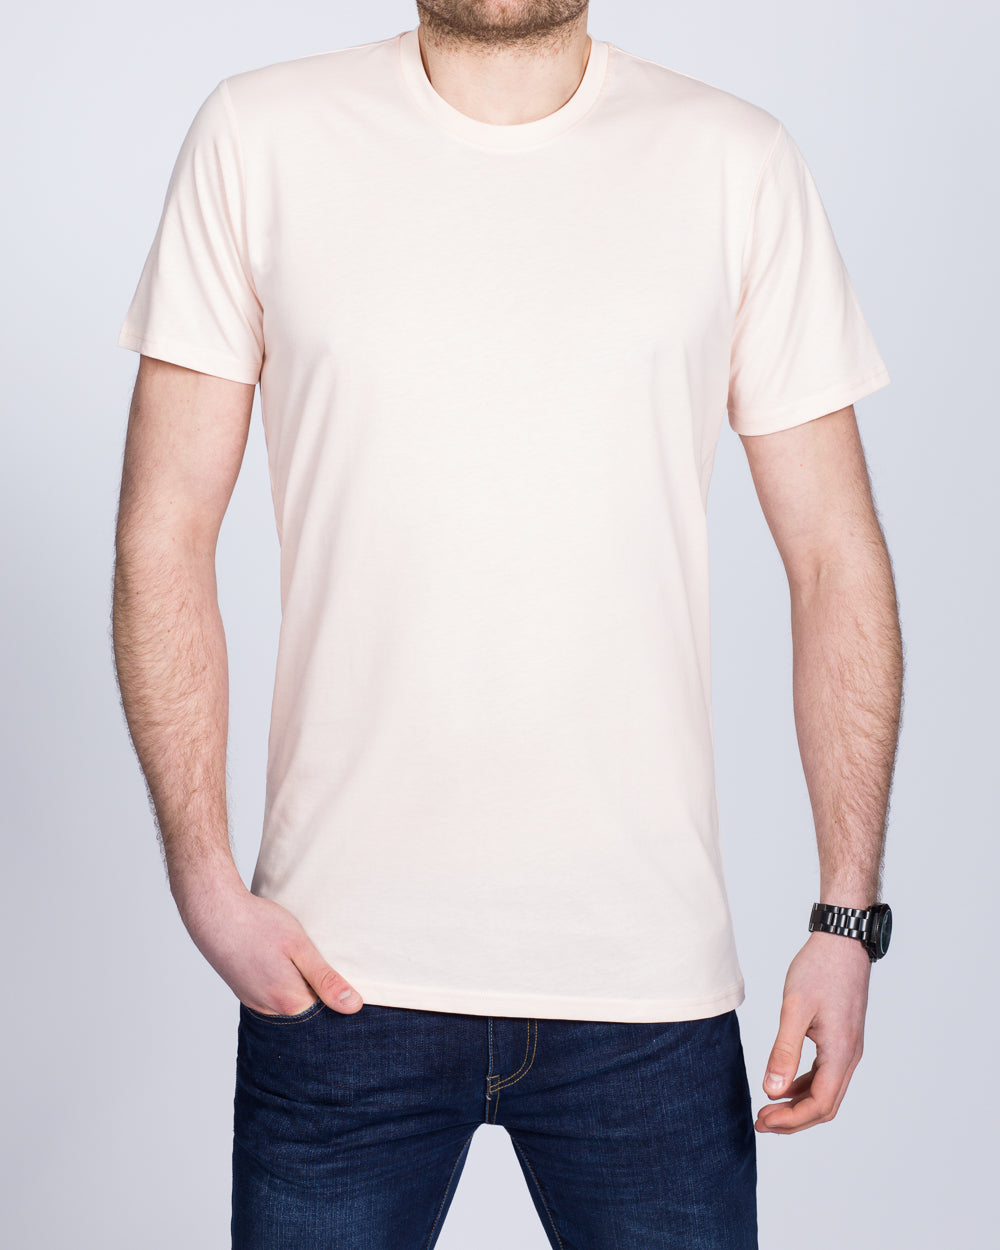 Girav Sydney Tall T-Shirt (light rose)